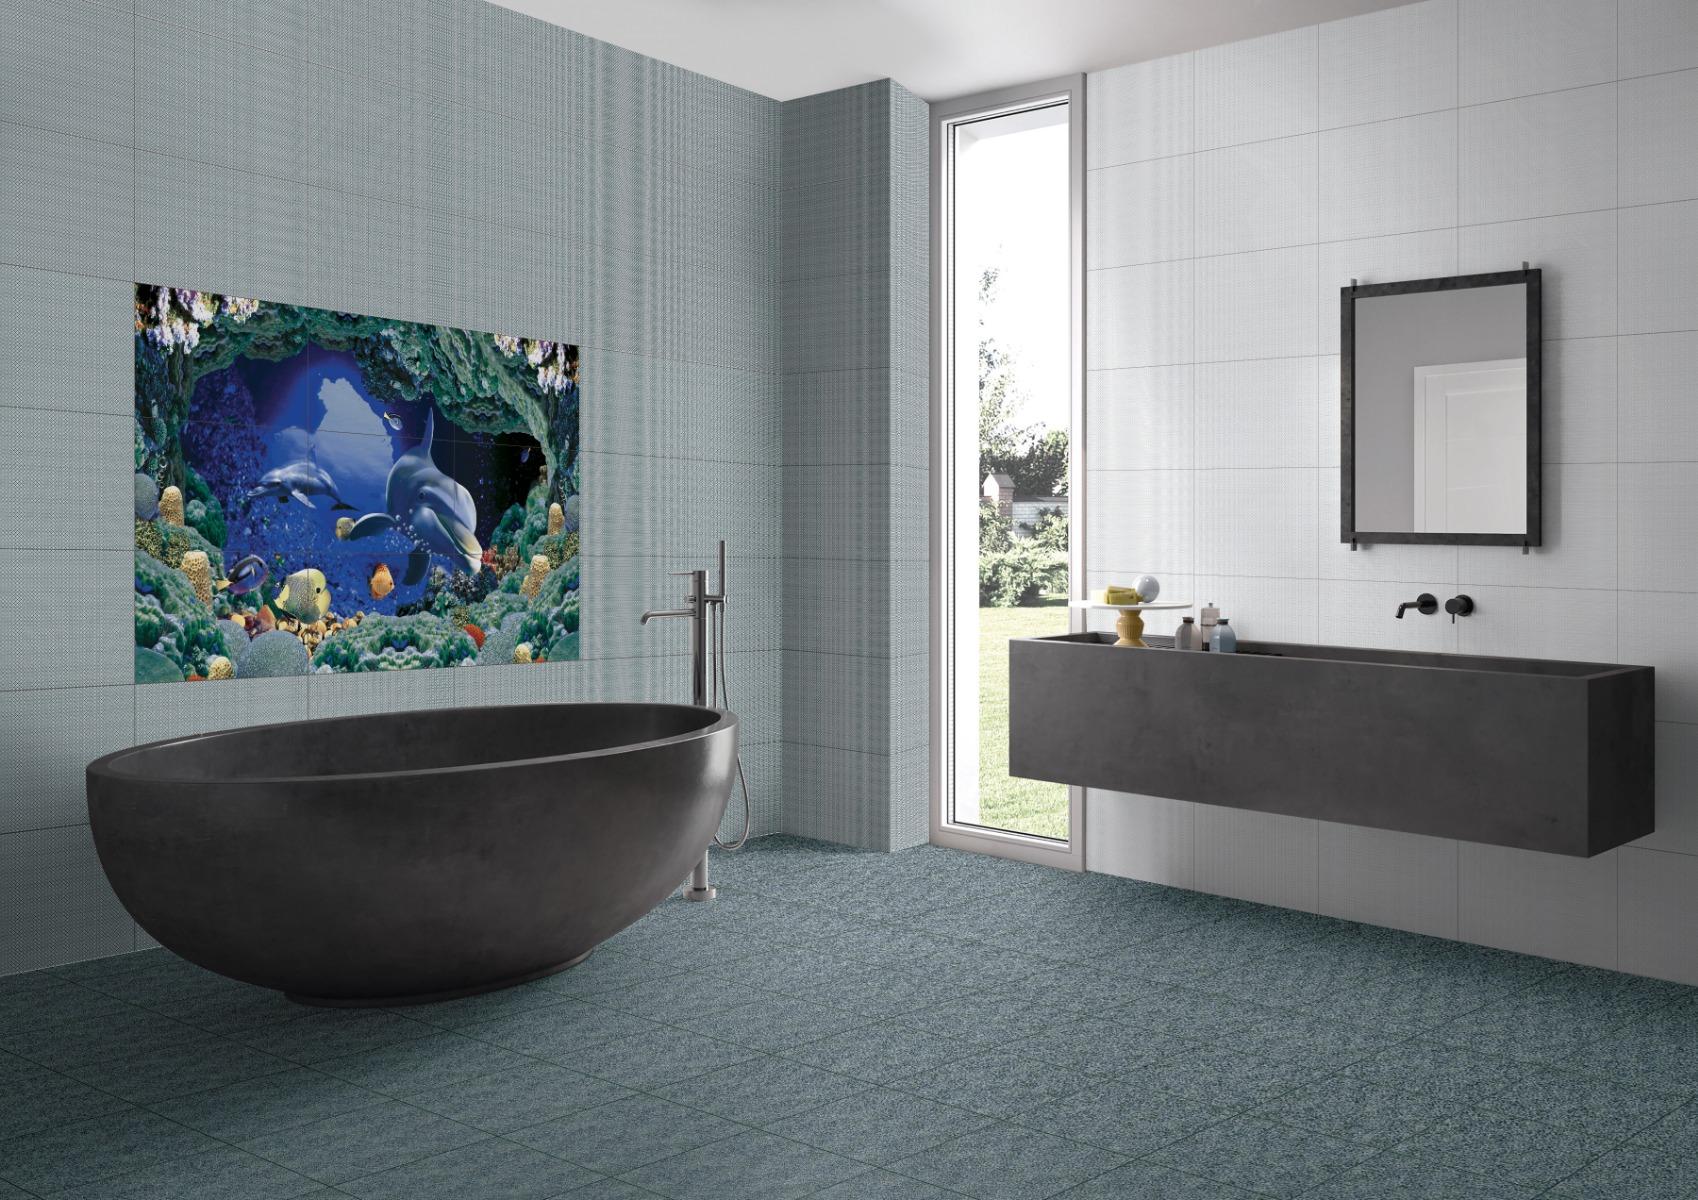 Estilo2.0 for Bathroom Tiles